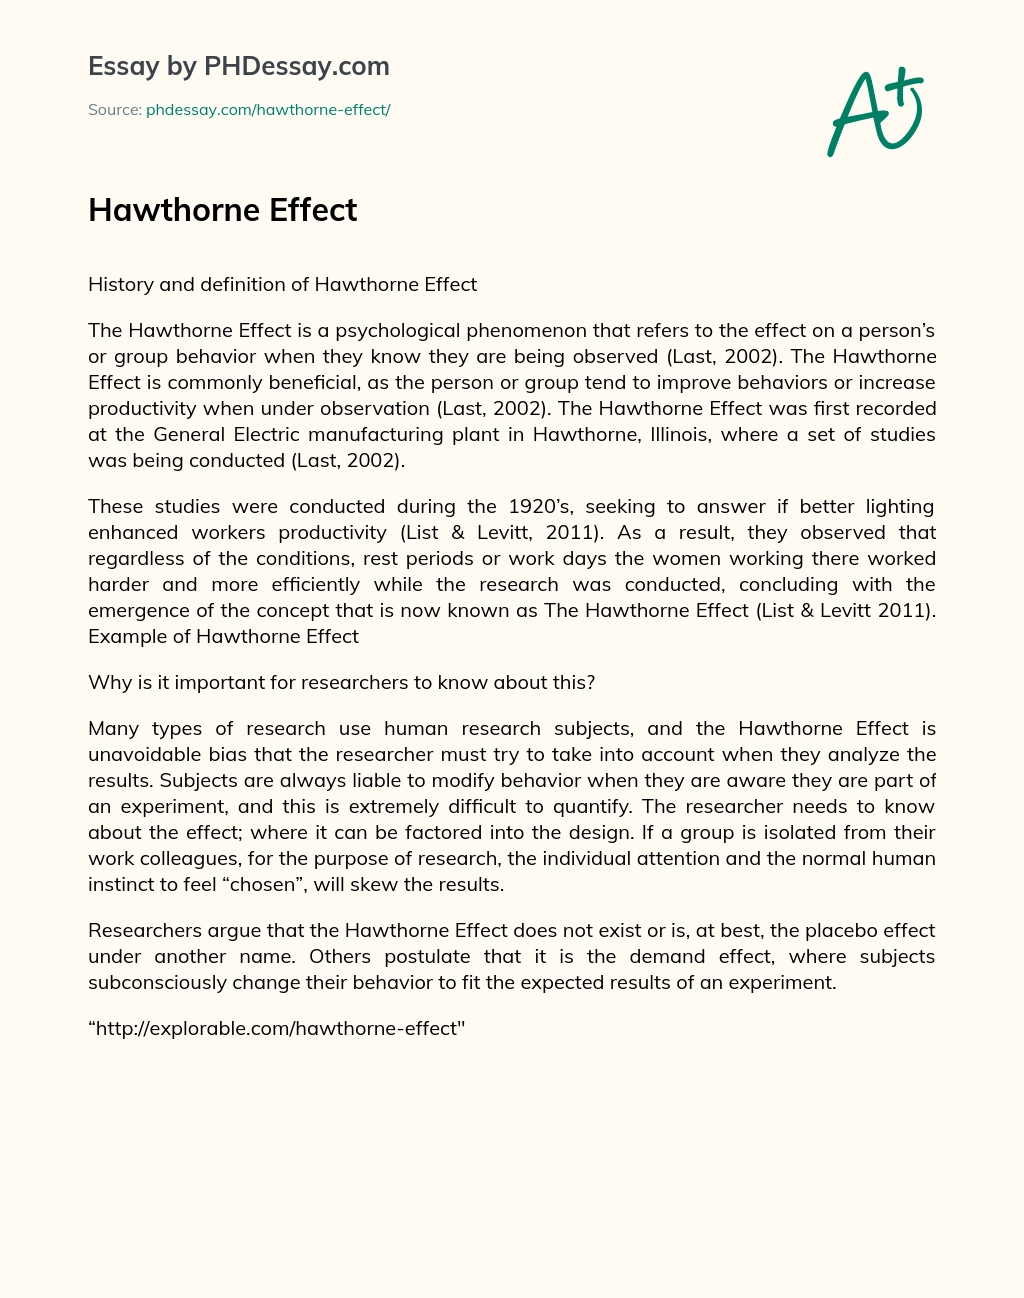 Hawthorne Effect essay